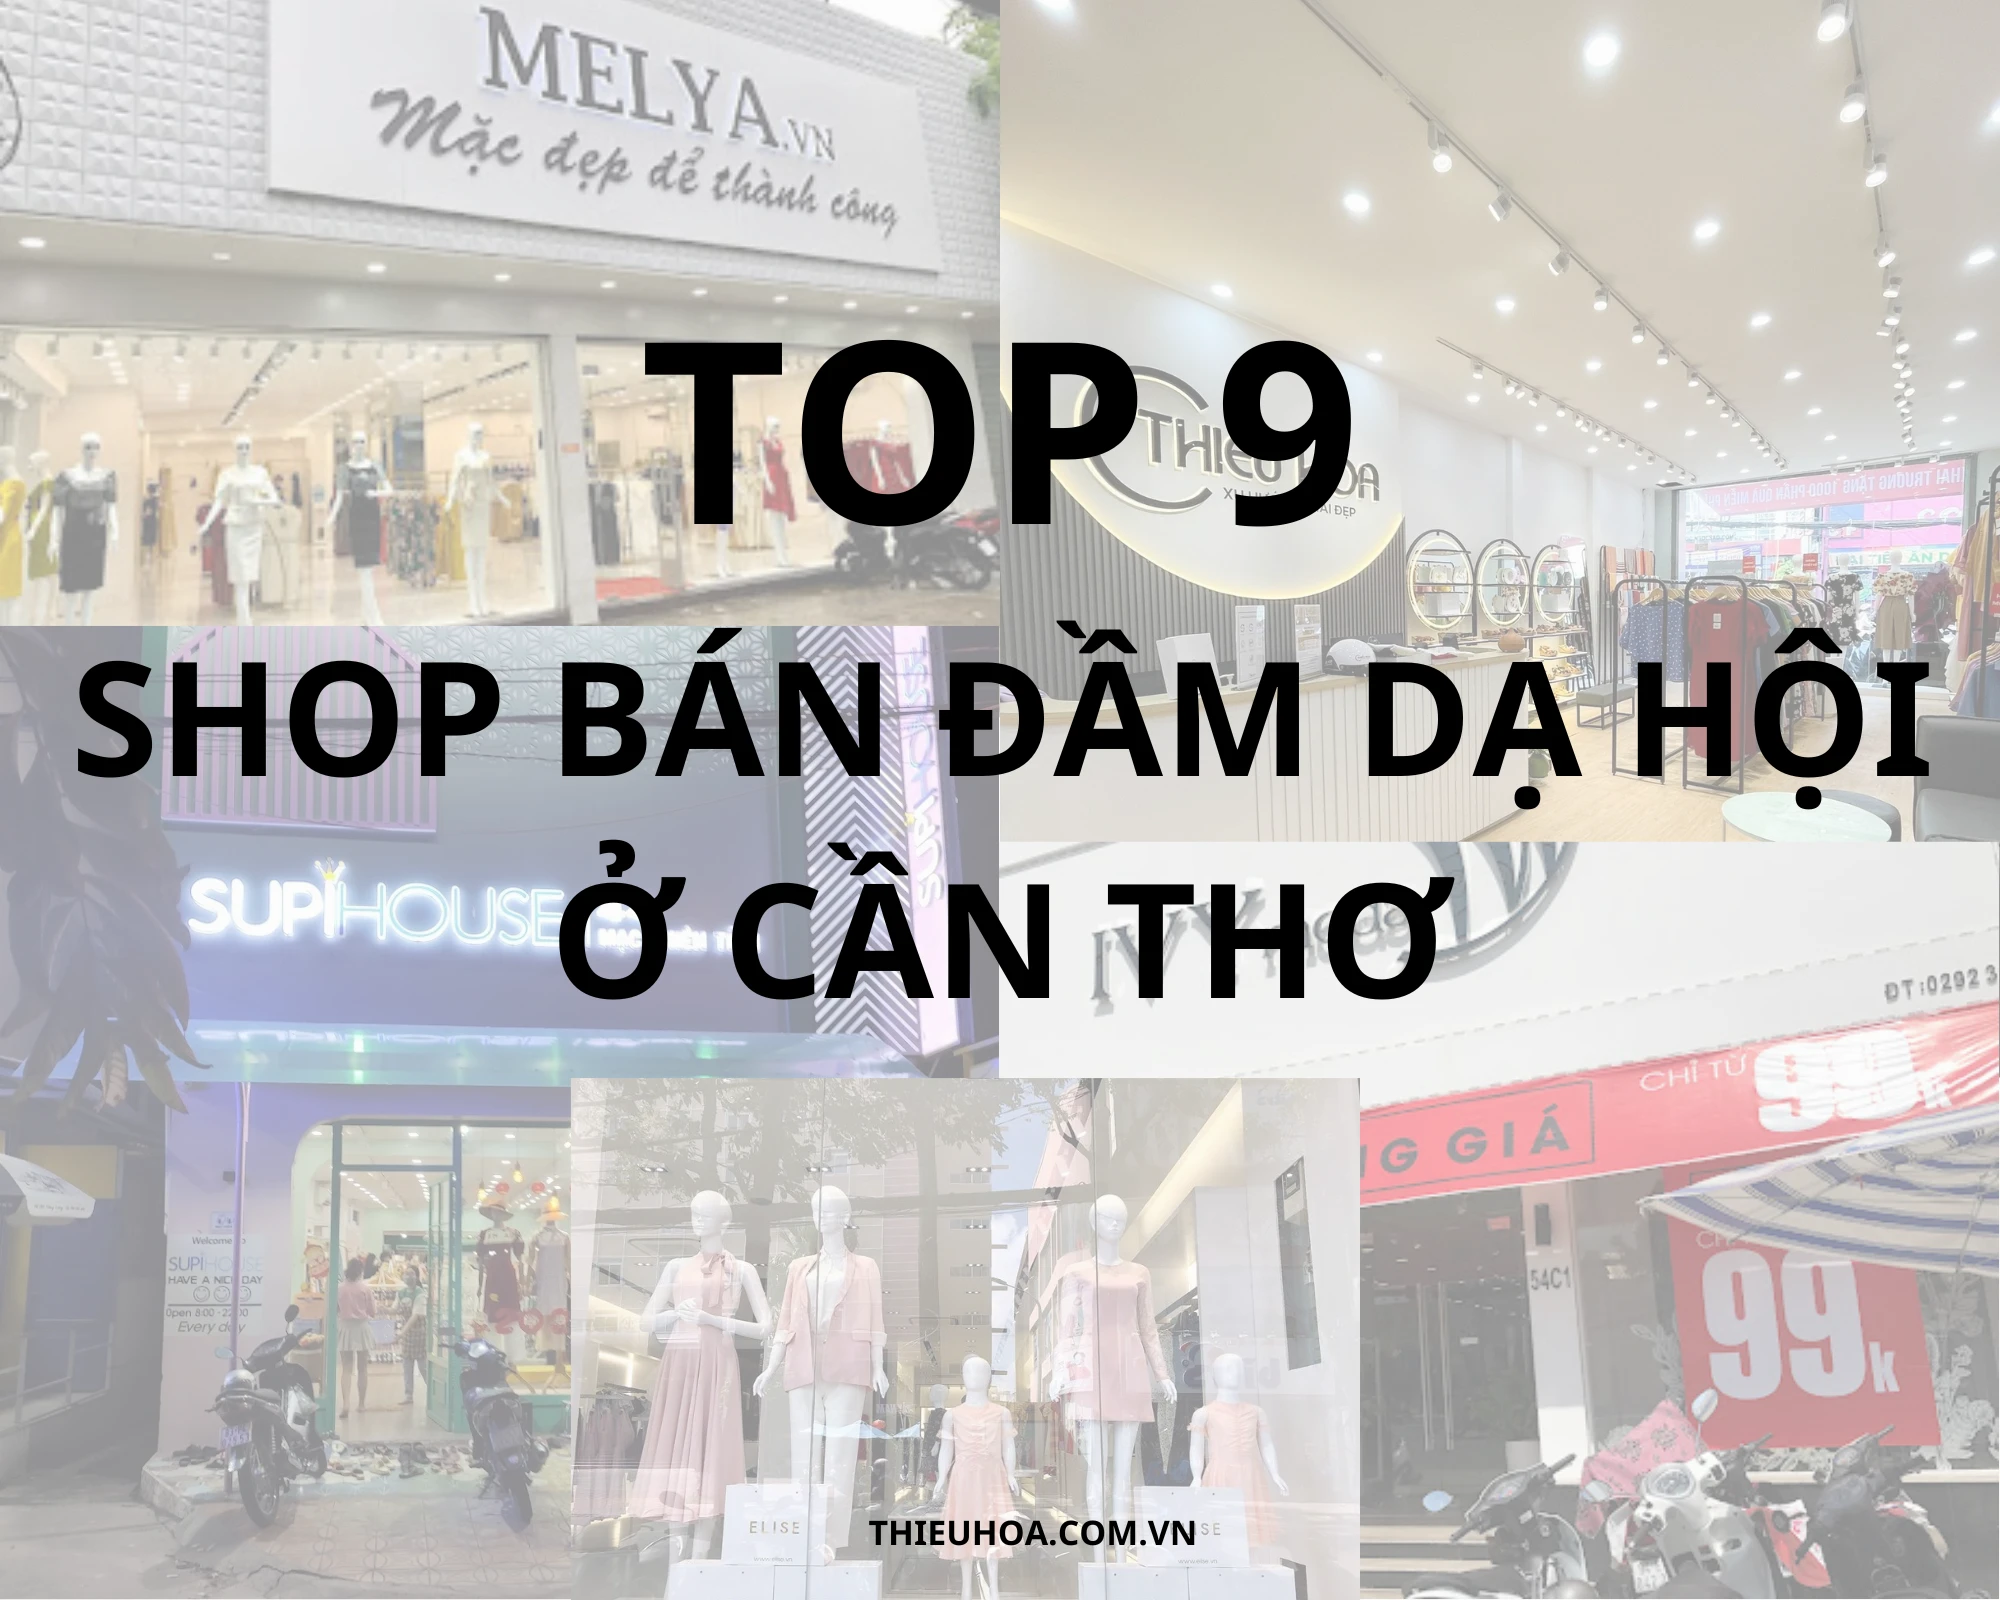 Top 9 shop bán đầm dạ hội ở Cần Thơ đẹp nhất